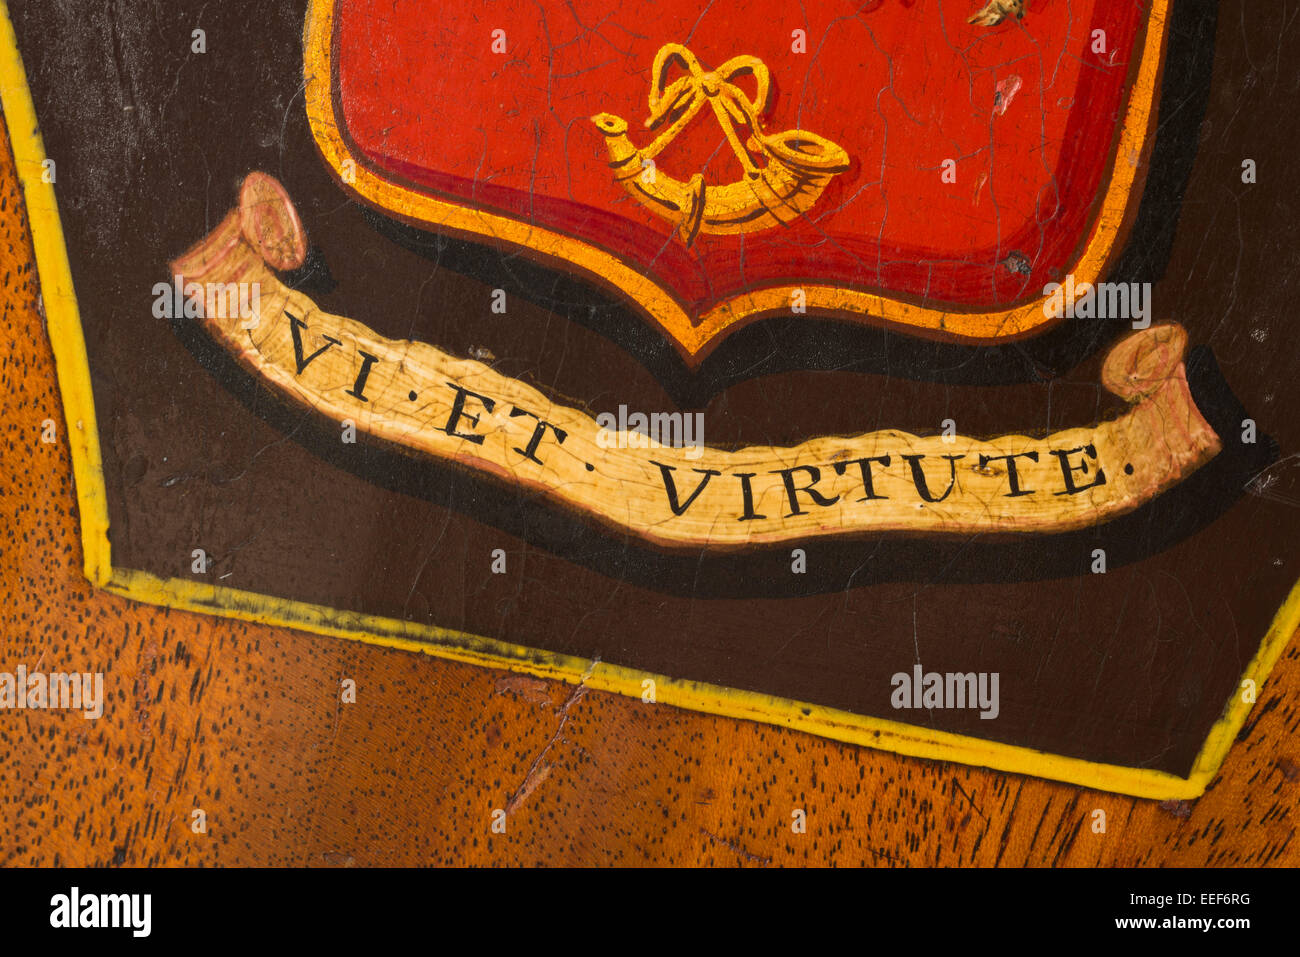 VI et Virtute, Motto der Familie in lateinischer Sprache. Das heißt, durch Stärke und Tapferkeit. Stockfoto